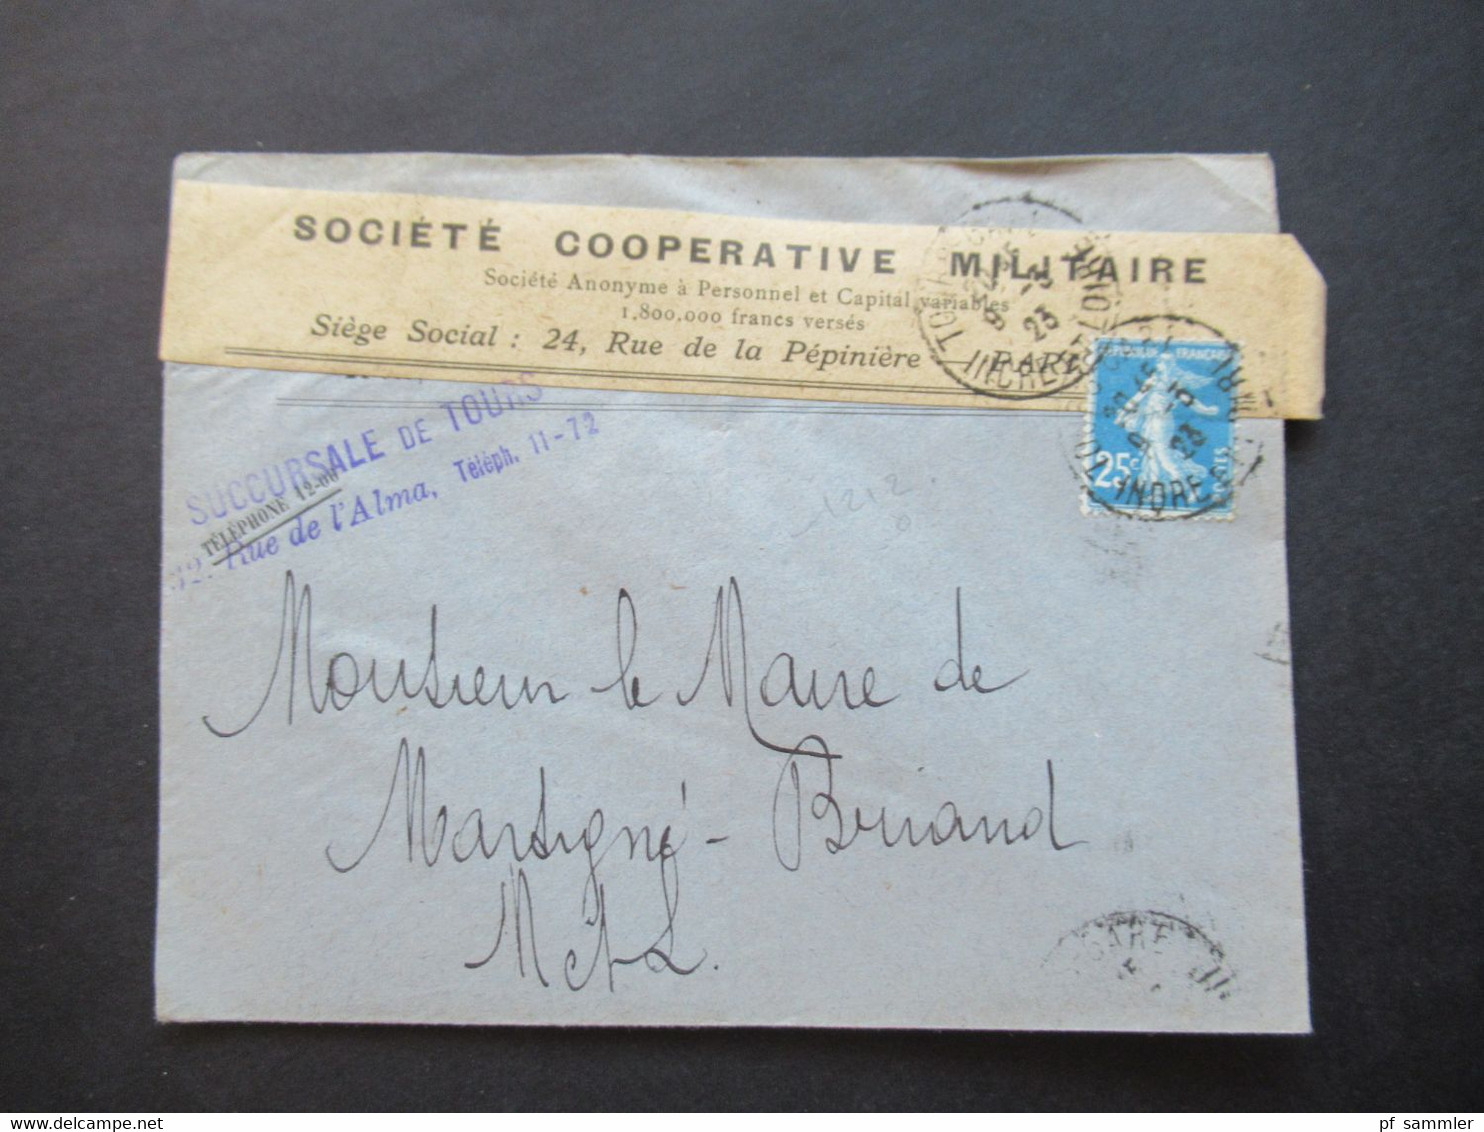 Frankreich 1923 Umschlag Mit Aufkleber Societe Cooperative Militaire / Stempel Succursale De Tours Rue De L'Alma - Briefe U. Dokumente